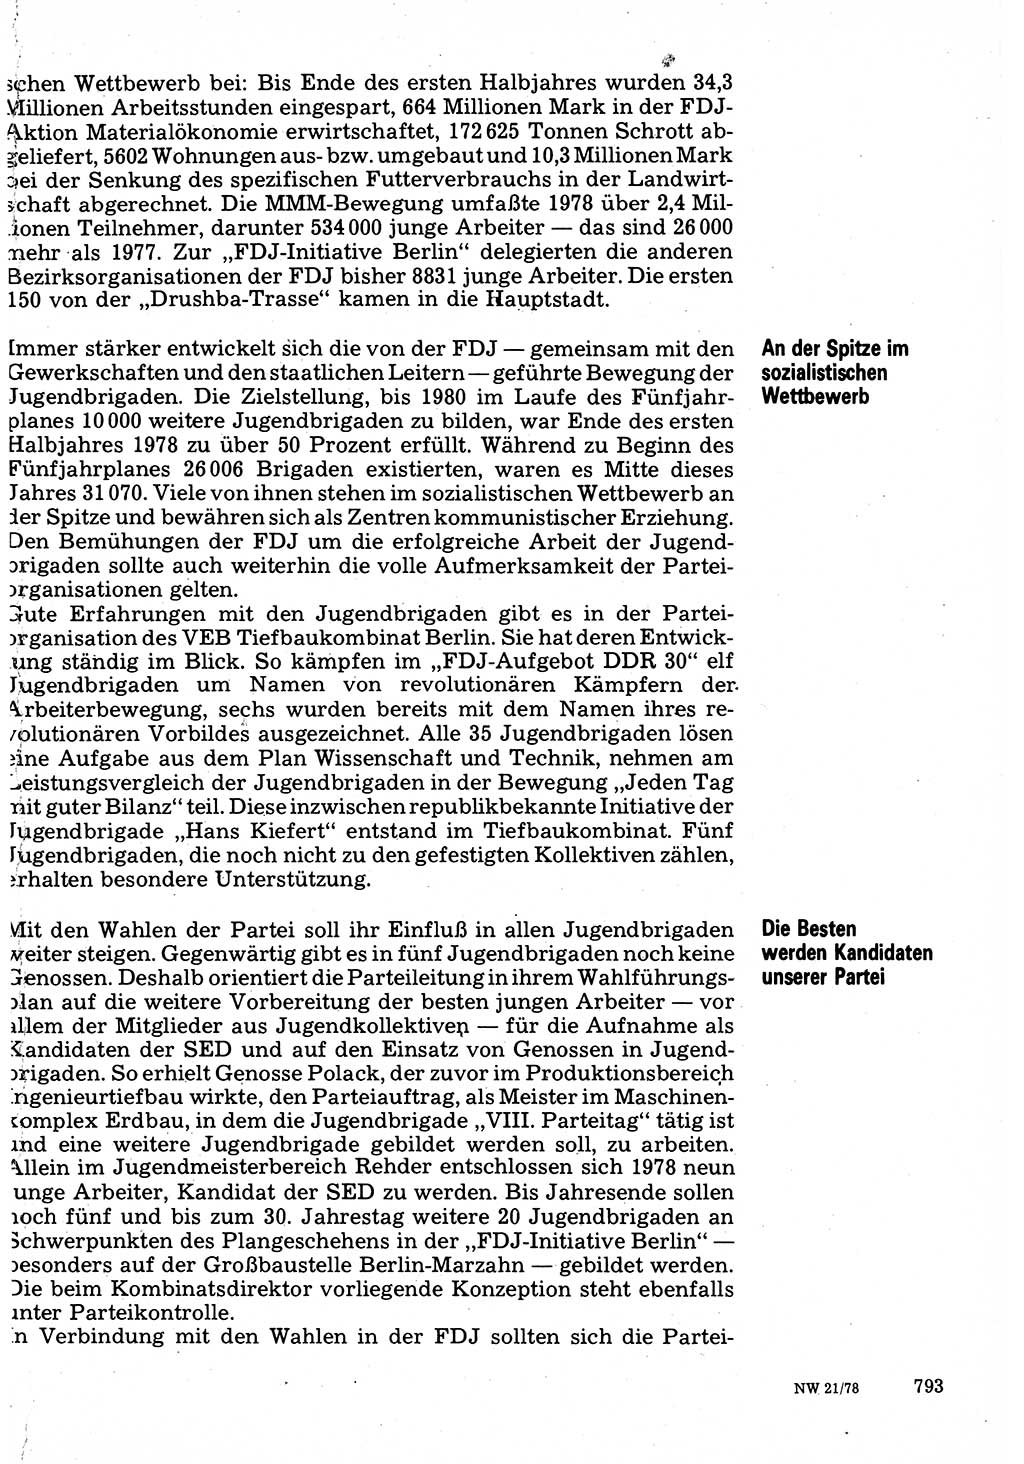 Neuer Weg (NW), Organ des Zentralkomitees (ZK) der SED (Sozialistische Einheitspartei Deutschlands) für Fragen des Parteilebens, 33. Jahrgang [Deutsche Demokratische Republik (DDR)] 1978, Seite 793 (NW ZK SED DDR 1978, S. 793)